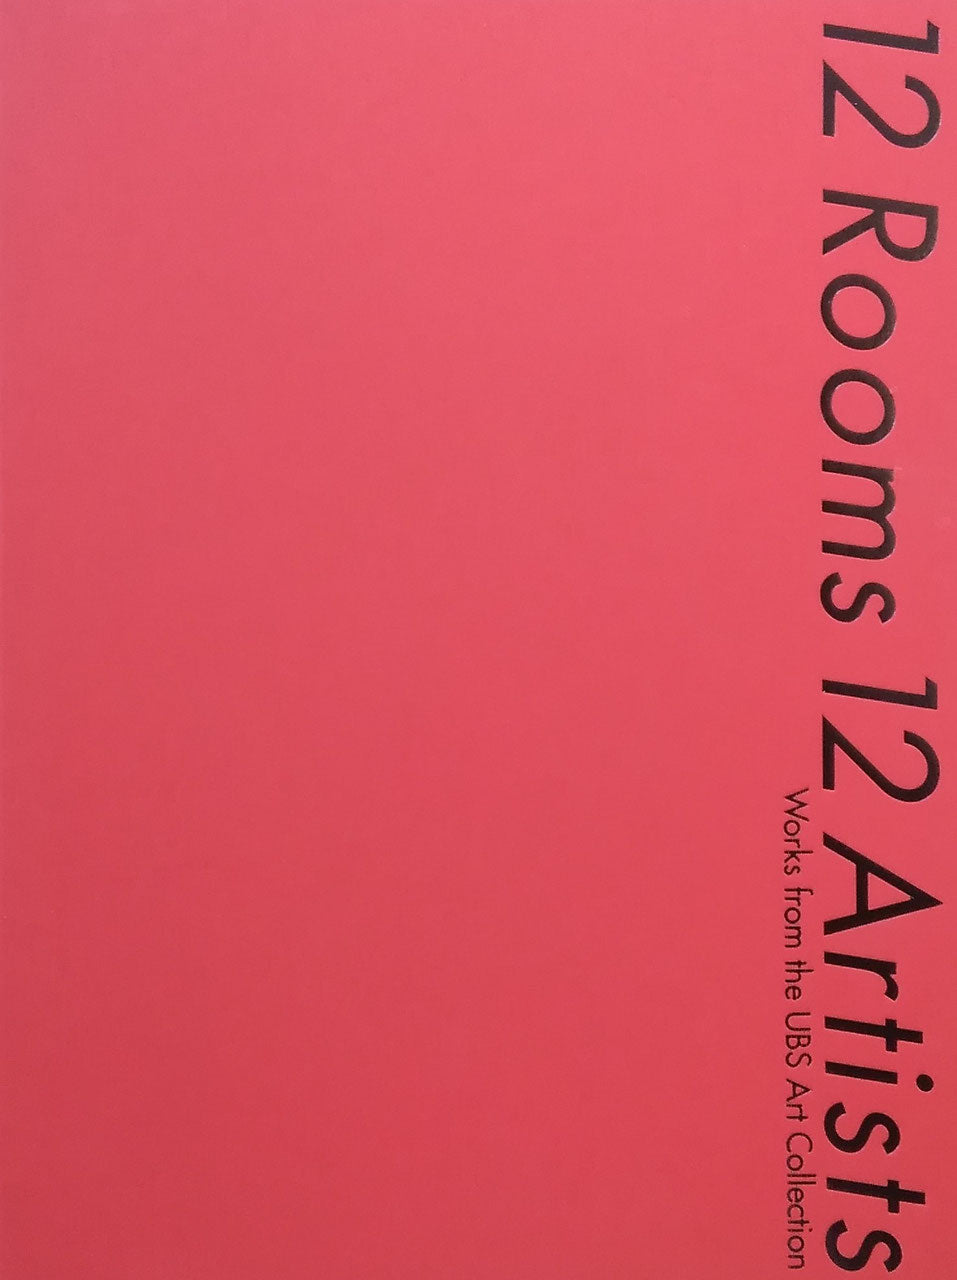 12 Rooms 12 Artists 12の部屋、12のアーティスト　UBSアート・コレクションより　2016